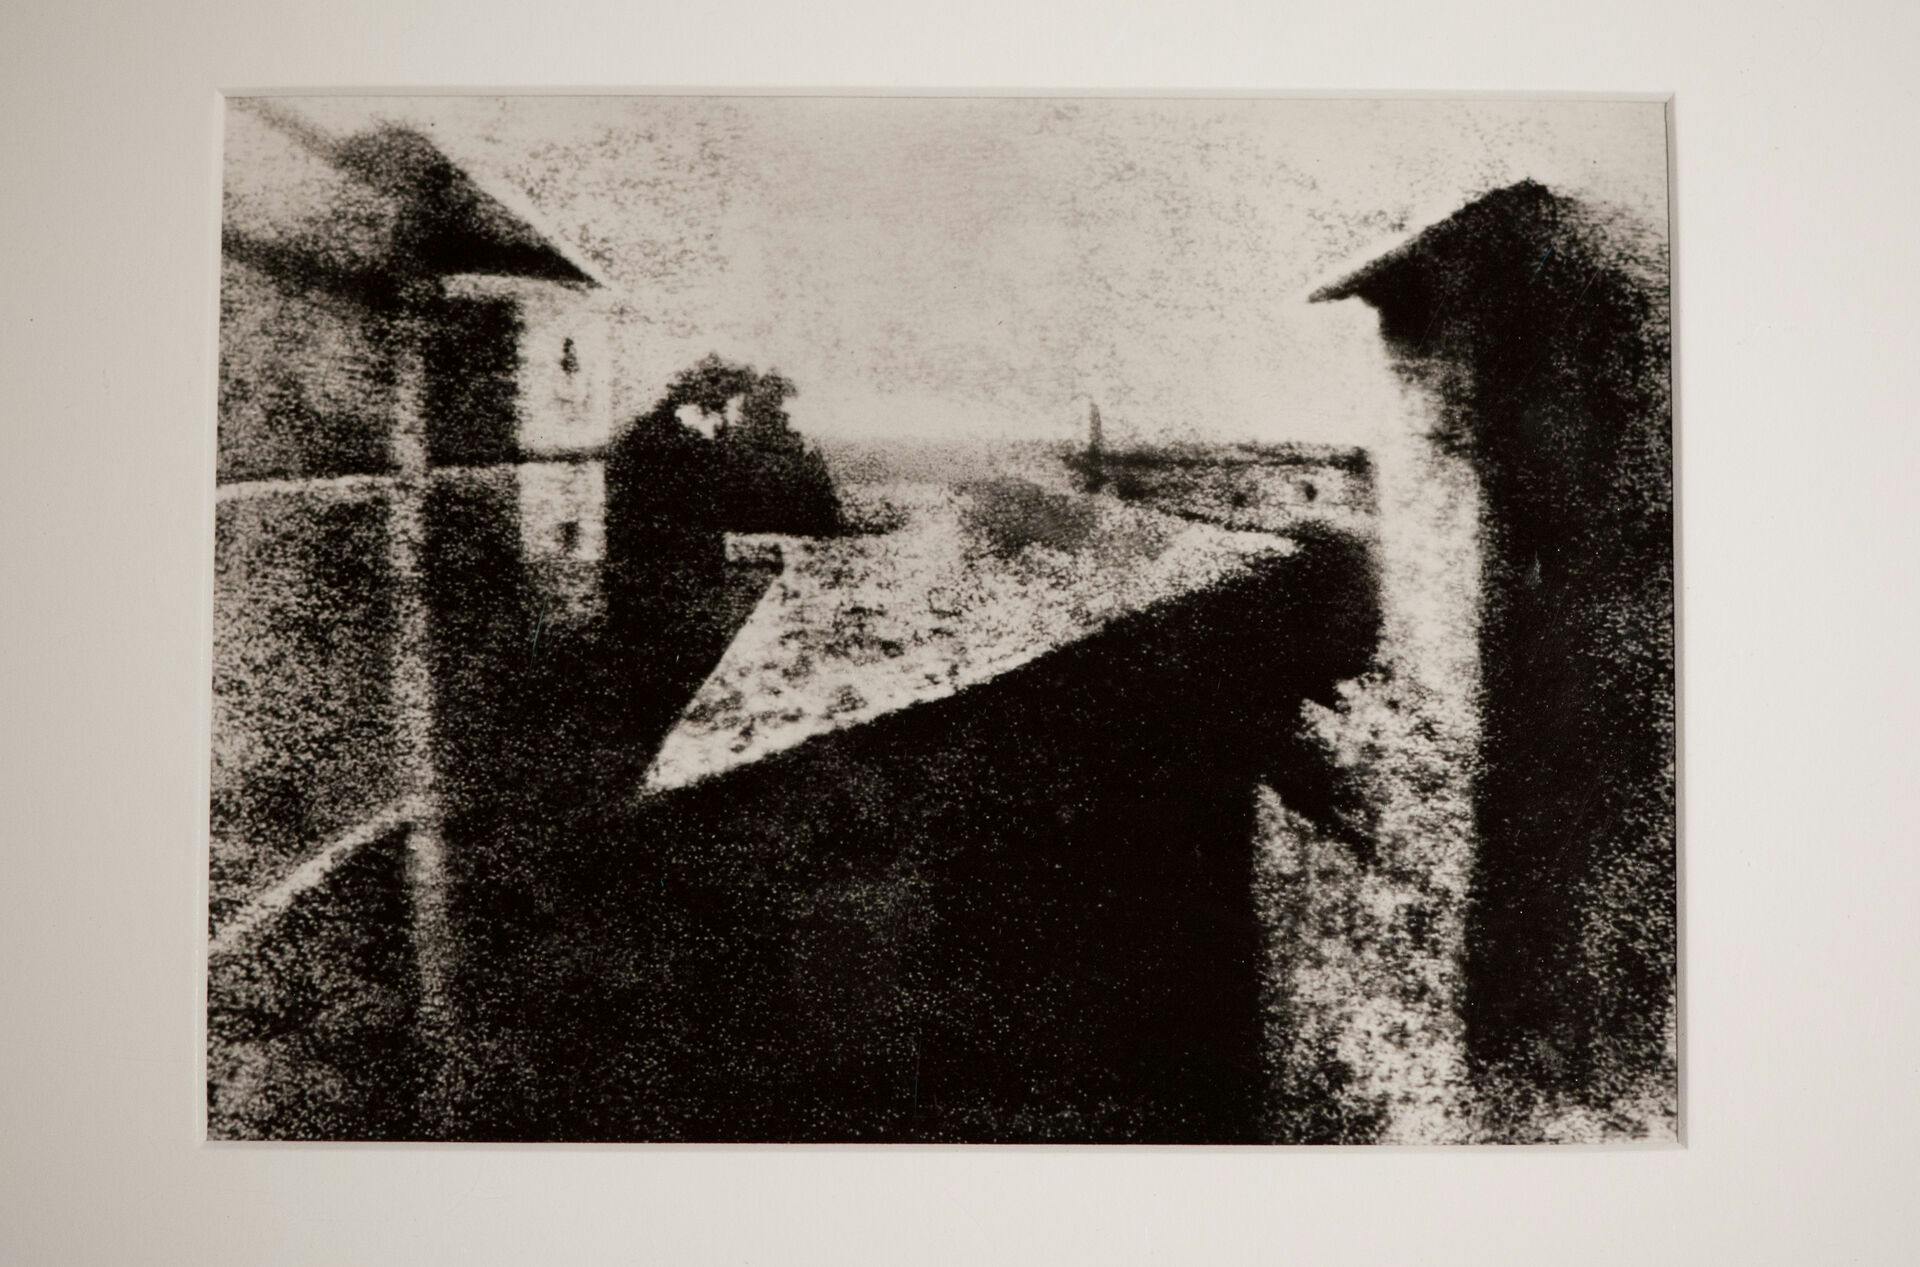 Sådan ser verdens ældste fotografi ud. Det er taget af den franske Joseph Nicéphore Niépce i 1826 med navnet "Udsigt fra vinduet i Le Gras".